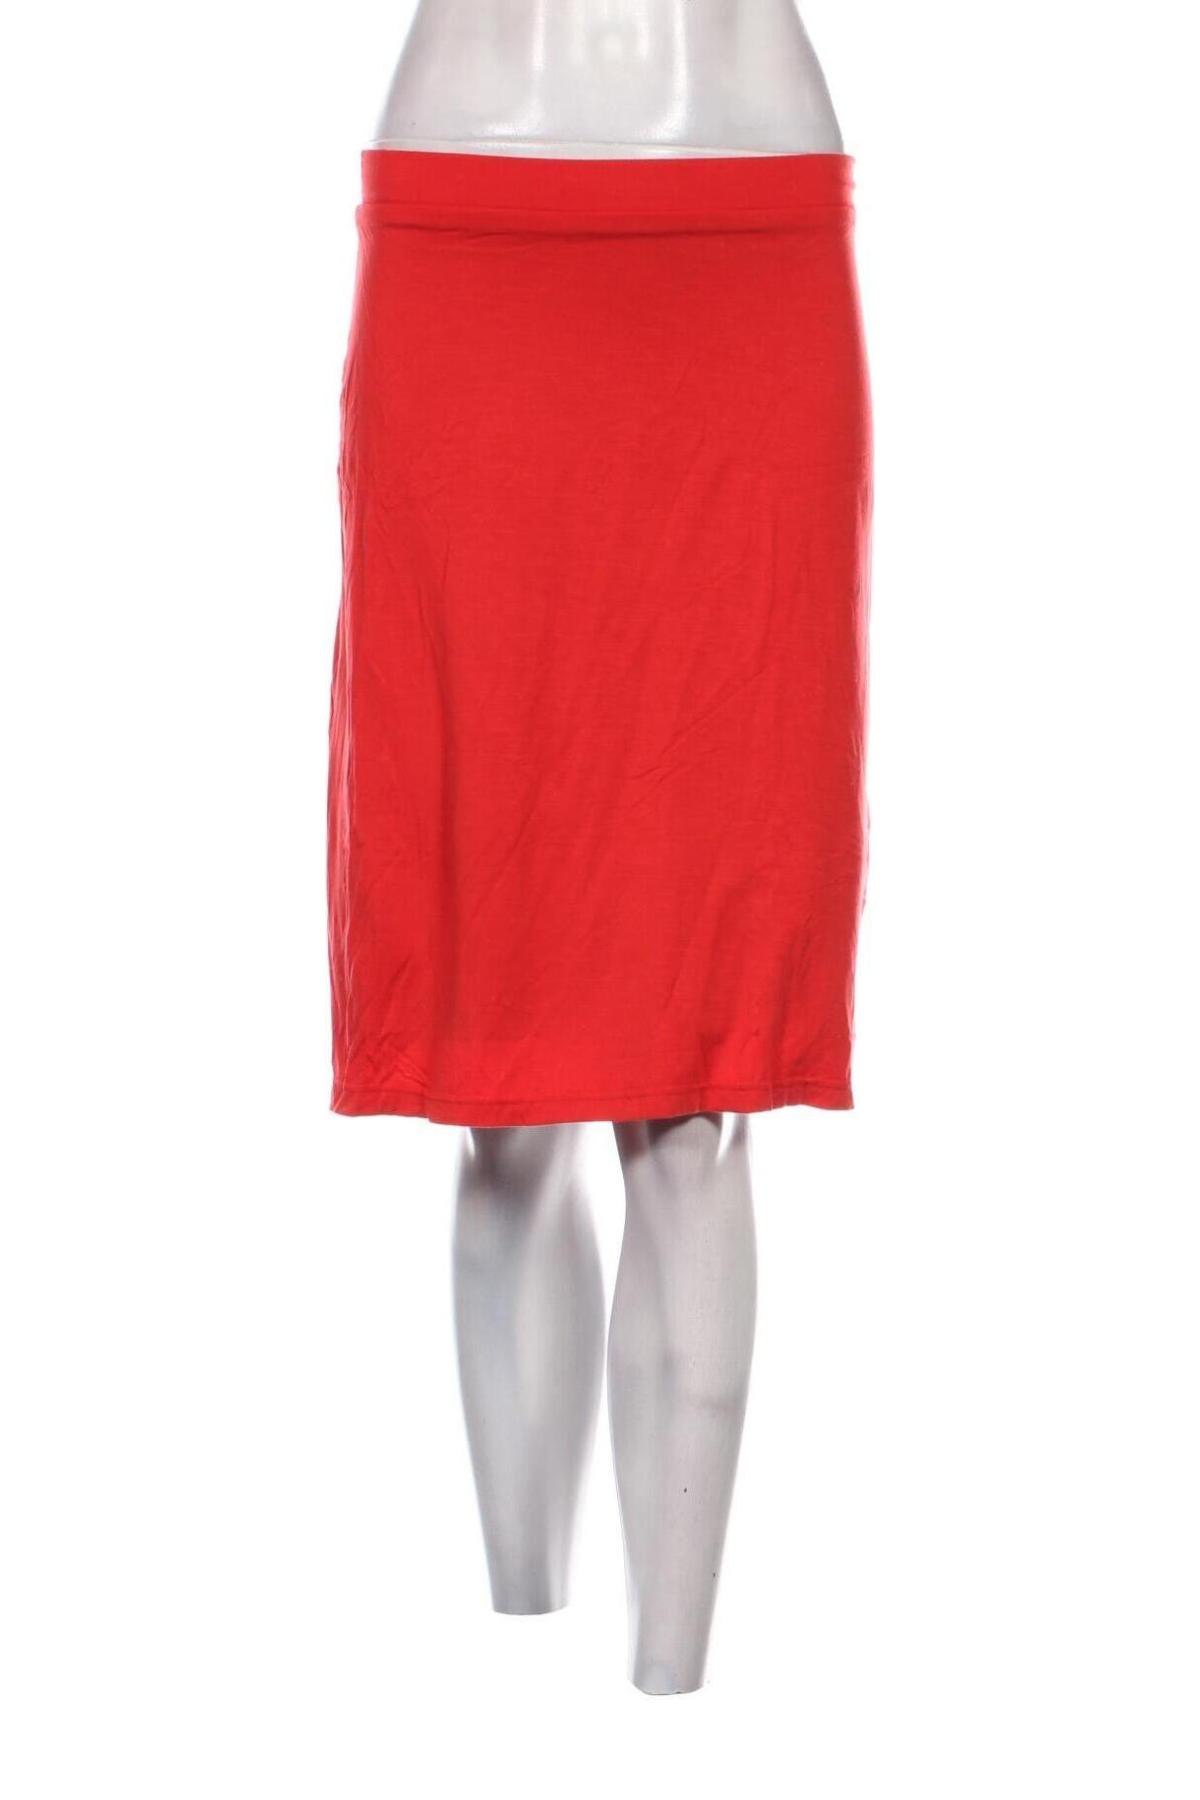 Φούστα LaSalle Amsterdam, Μέγεθος S, Χρώμα Κόκκινο, Τιμή 1,82 €